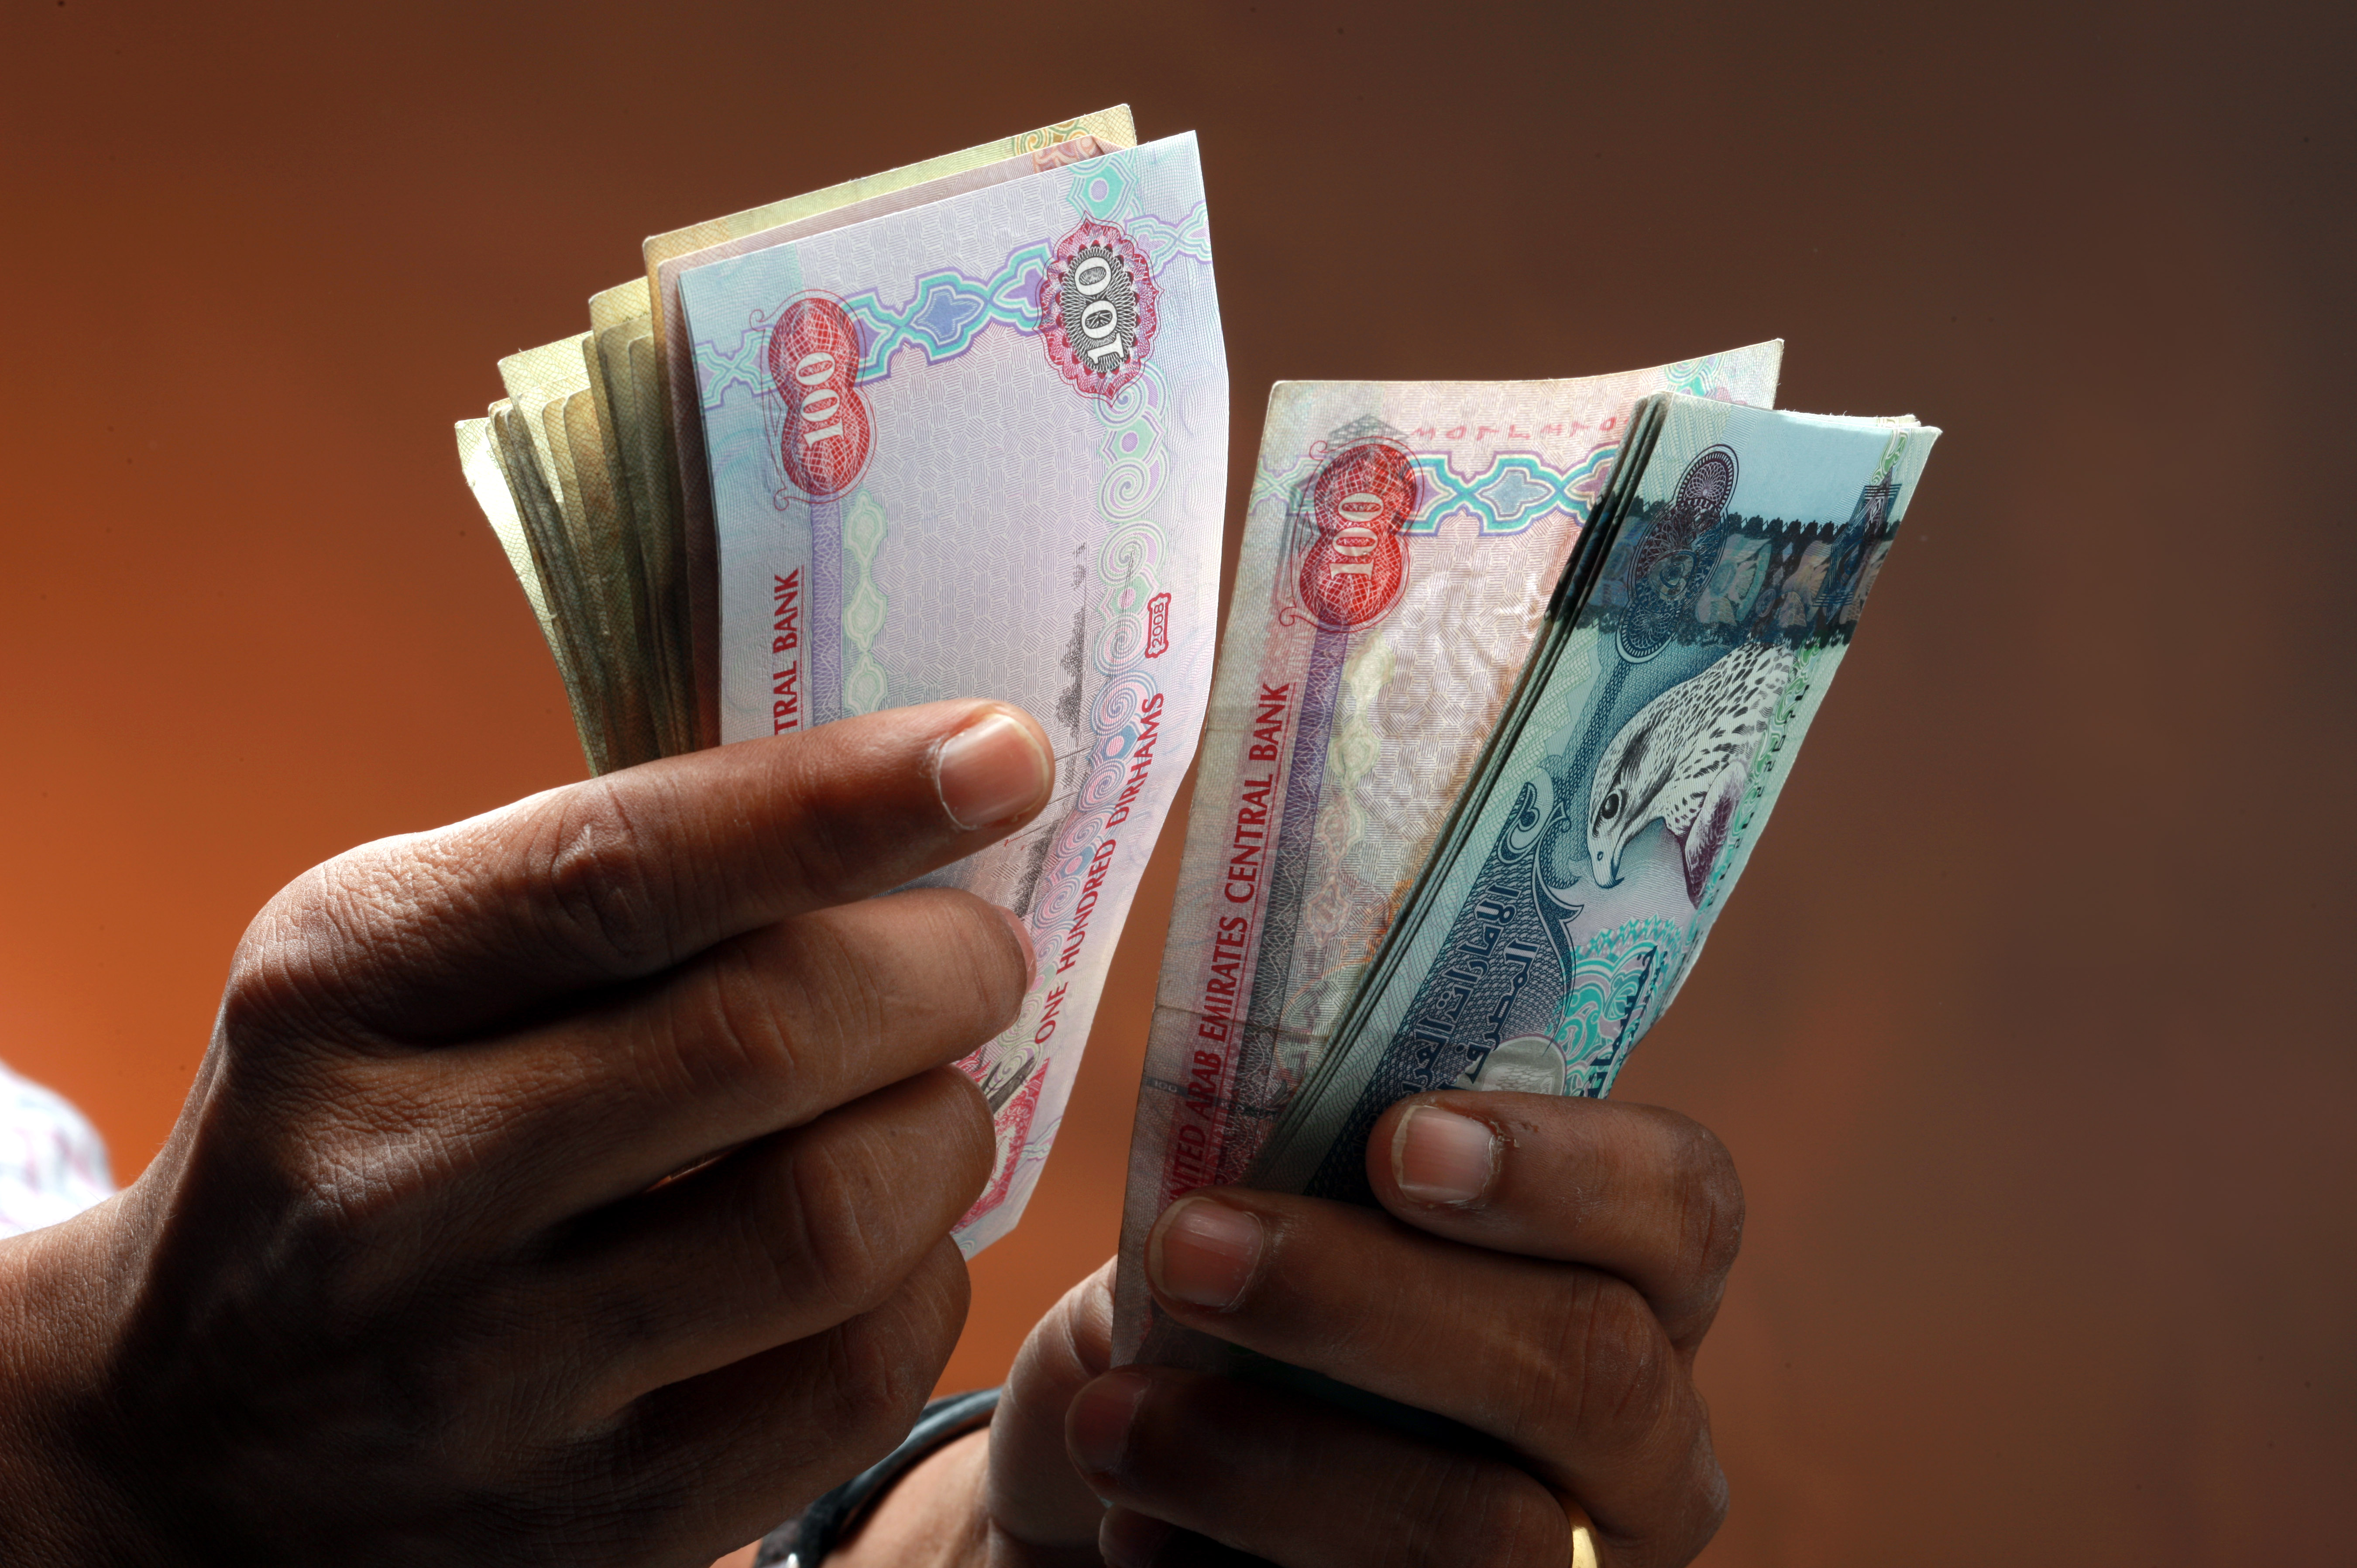 الإمارات الثالثة خليجياً في ارتفاع رواتب مدراء الشركات